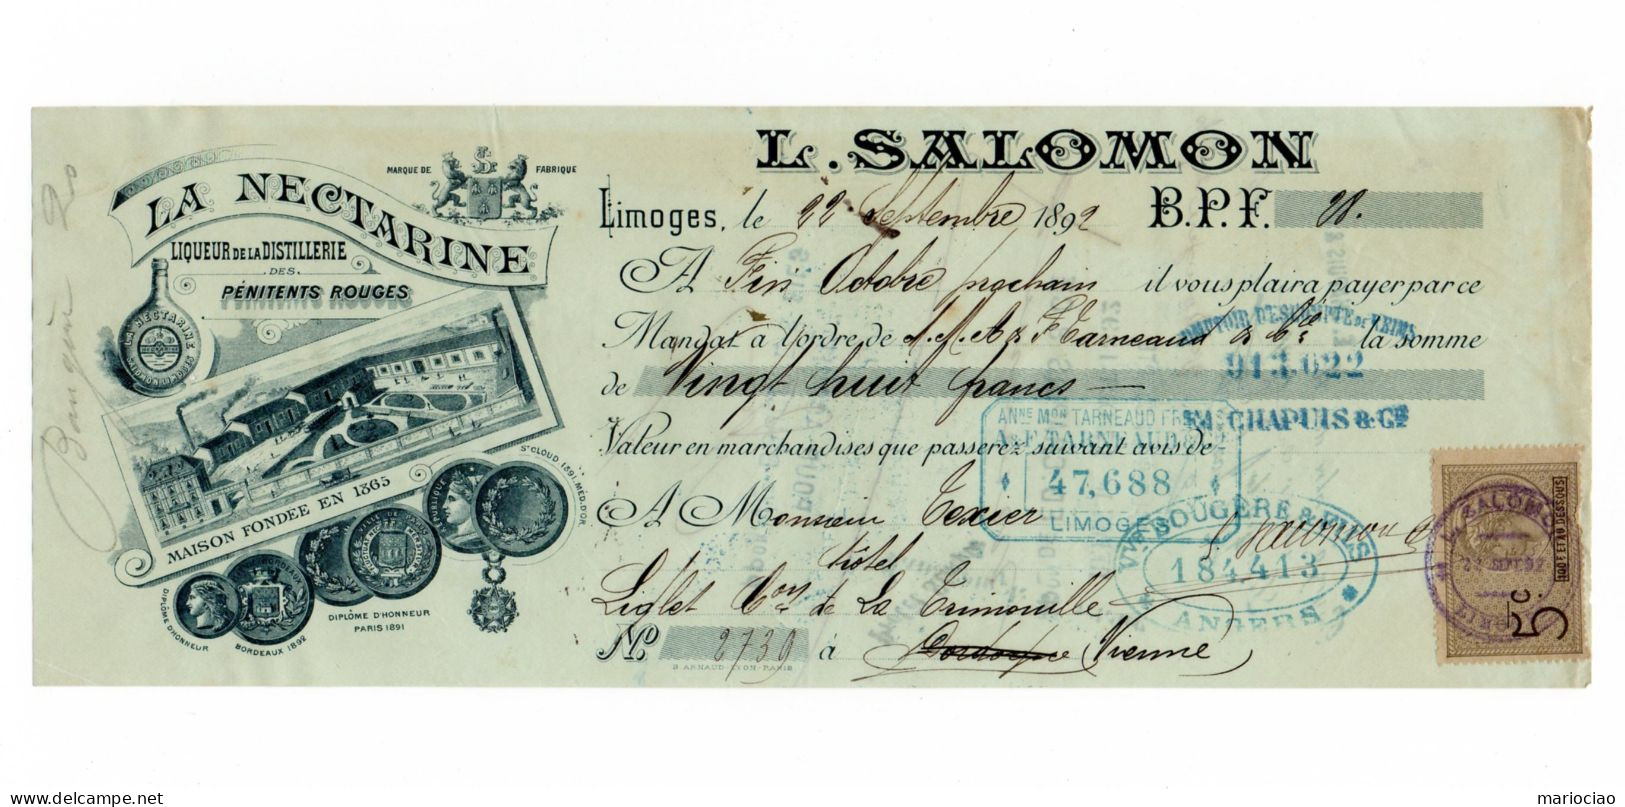 DC-FR 87 Limoges 1892 Fabrique De Liqueurs Surfines LA NECTARINE L. SALOMON - Bills Of Exchange